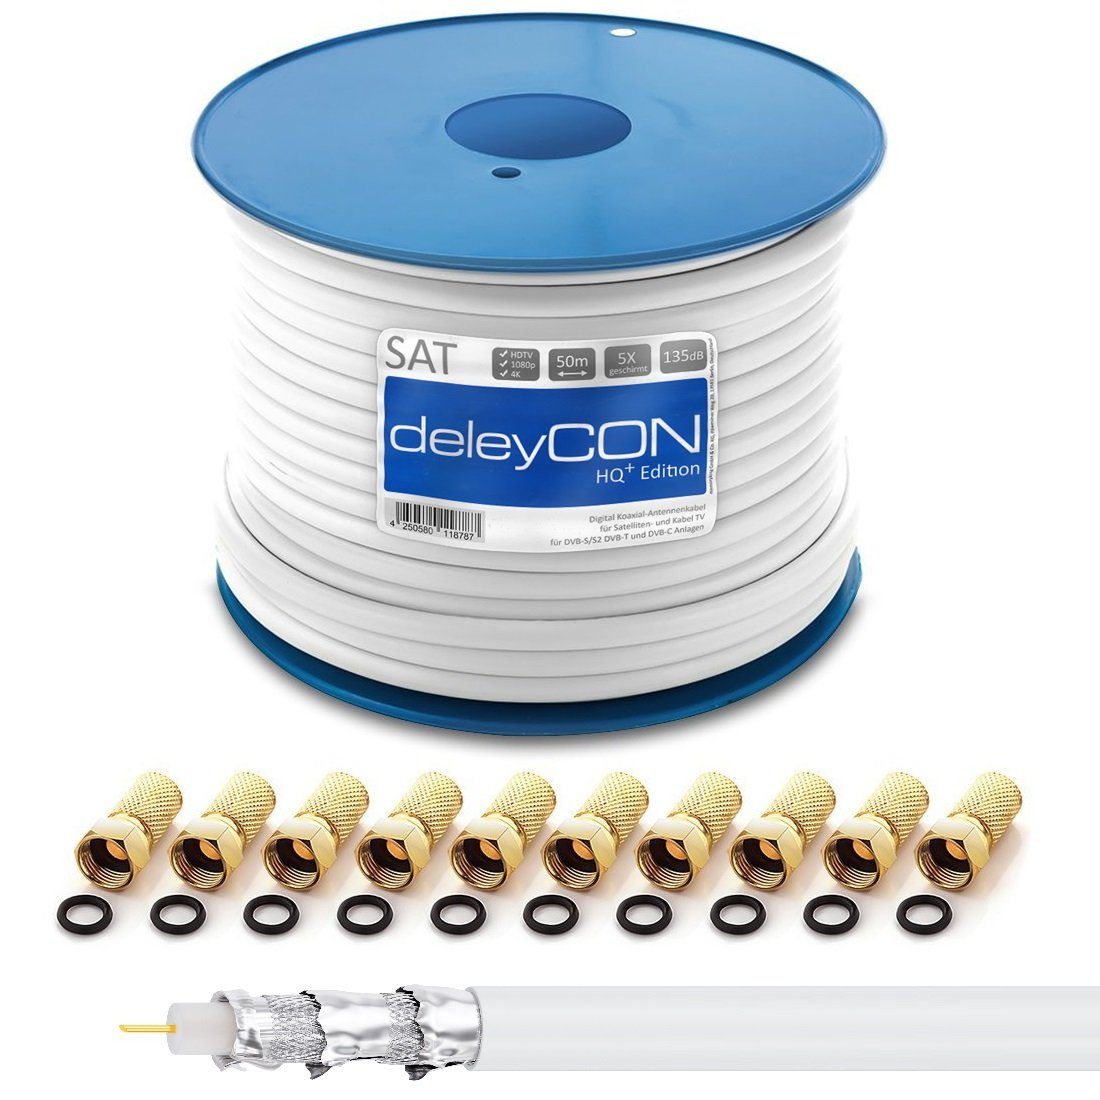 deleyCON deleyCON 50m HQ+ + Kabel 135dB 5x 10x HDTV F-Stecker geschirmt - SAT-Kabel SAT